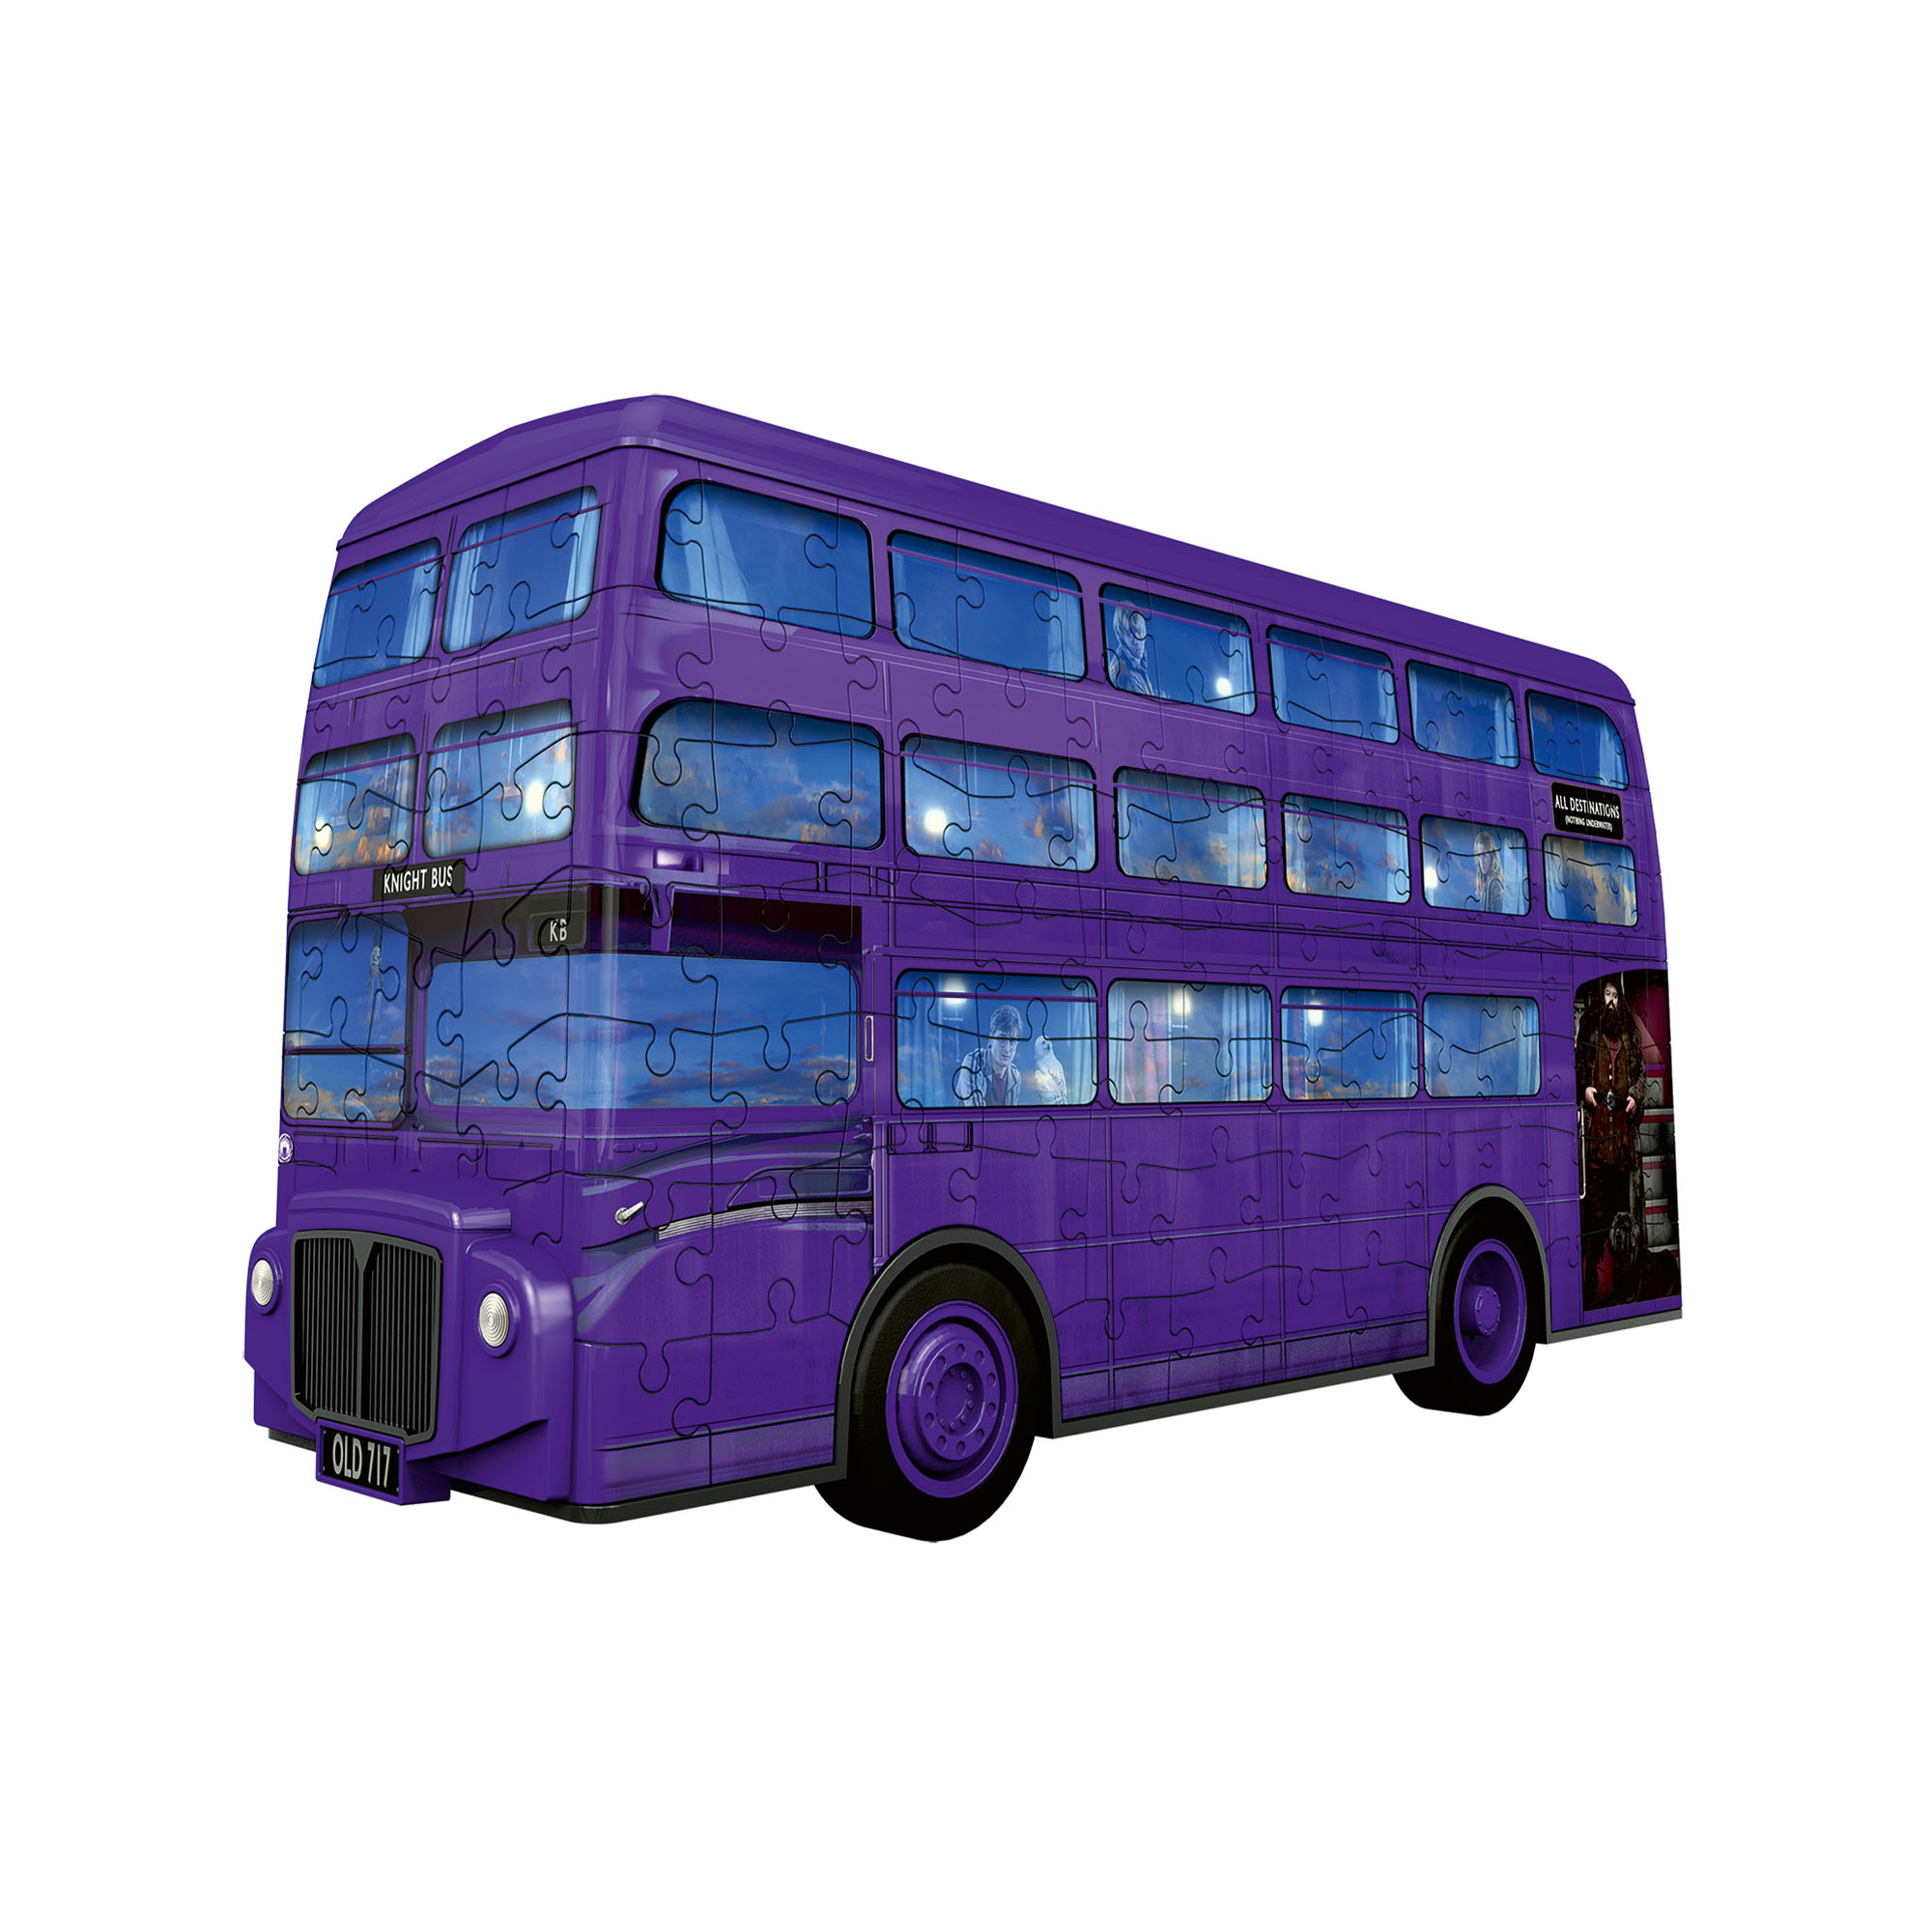 Ravensburger Puzzle 3D - London bus, Harry Potter, , large